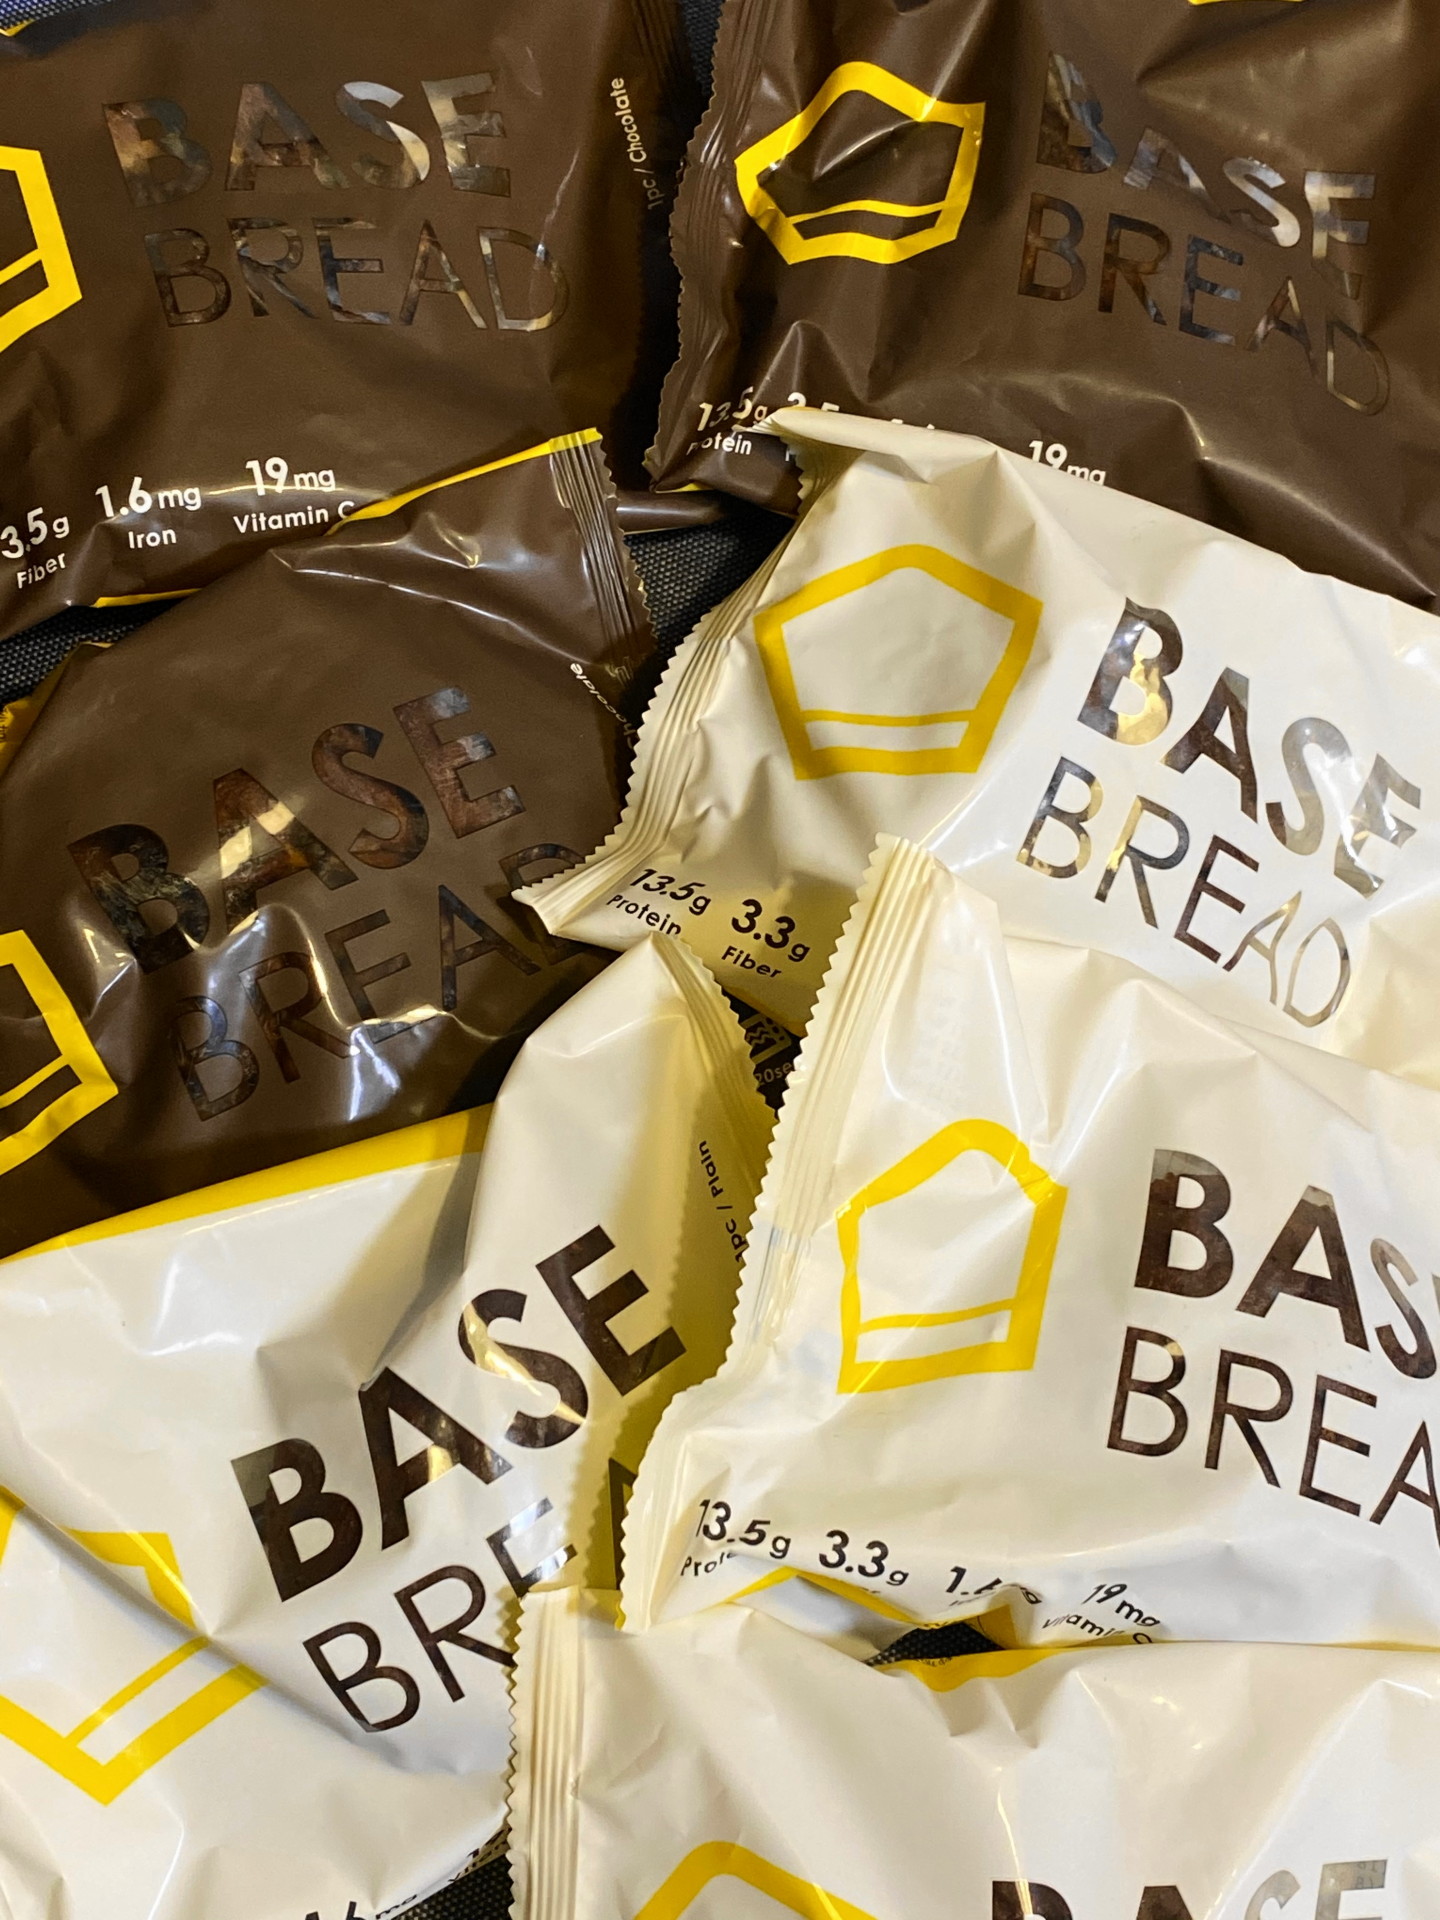 BASE BREADのチョコレートとプレーンのパッケージ